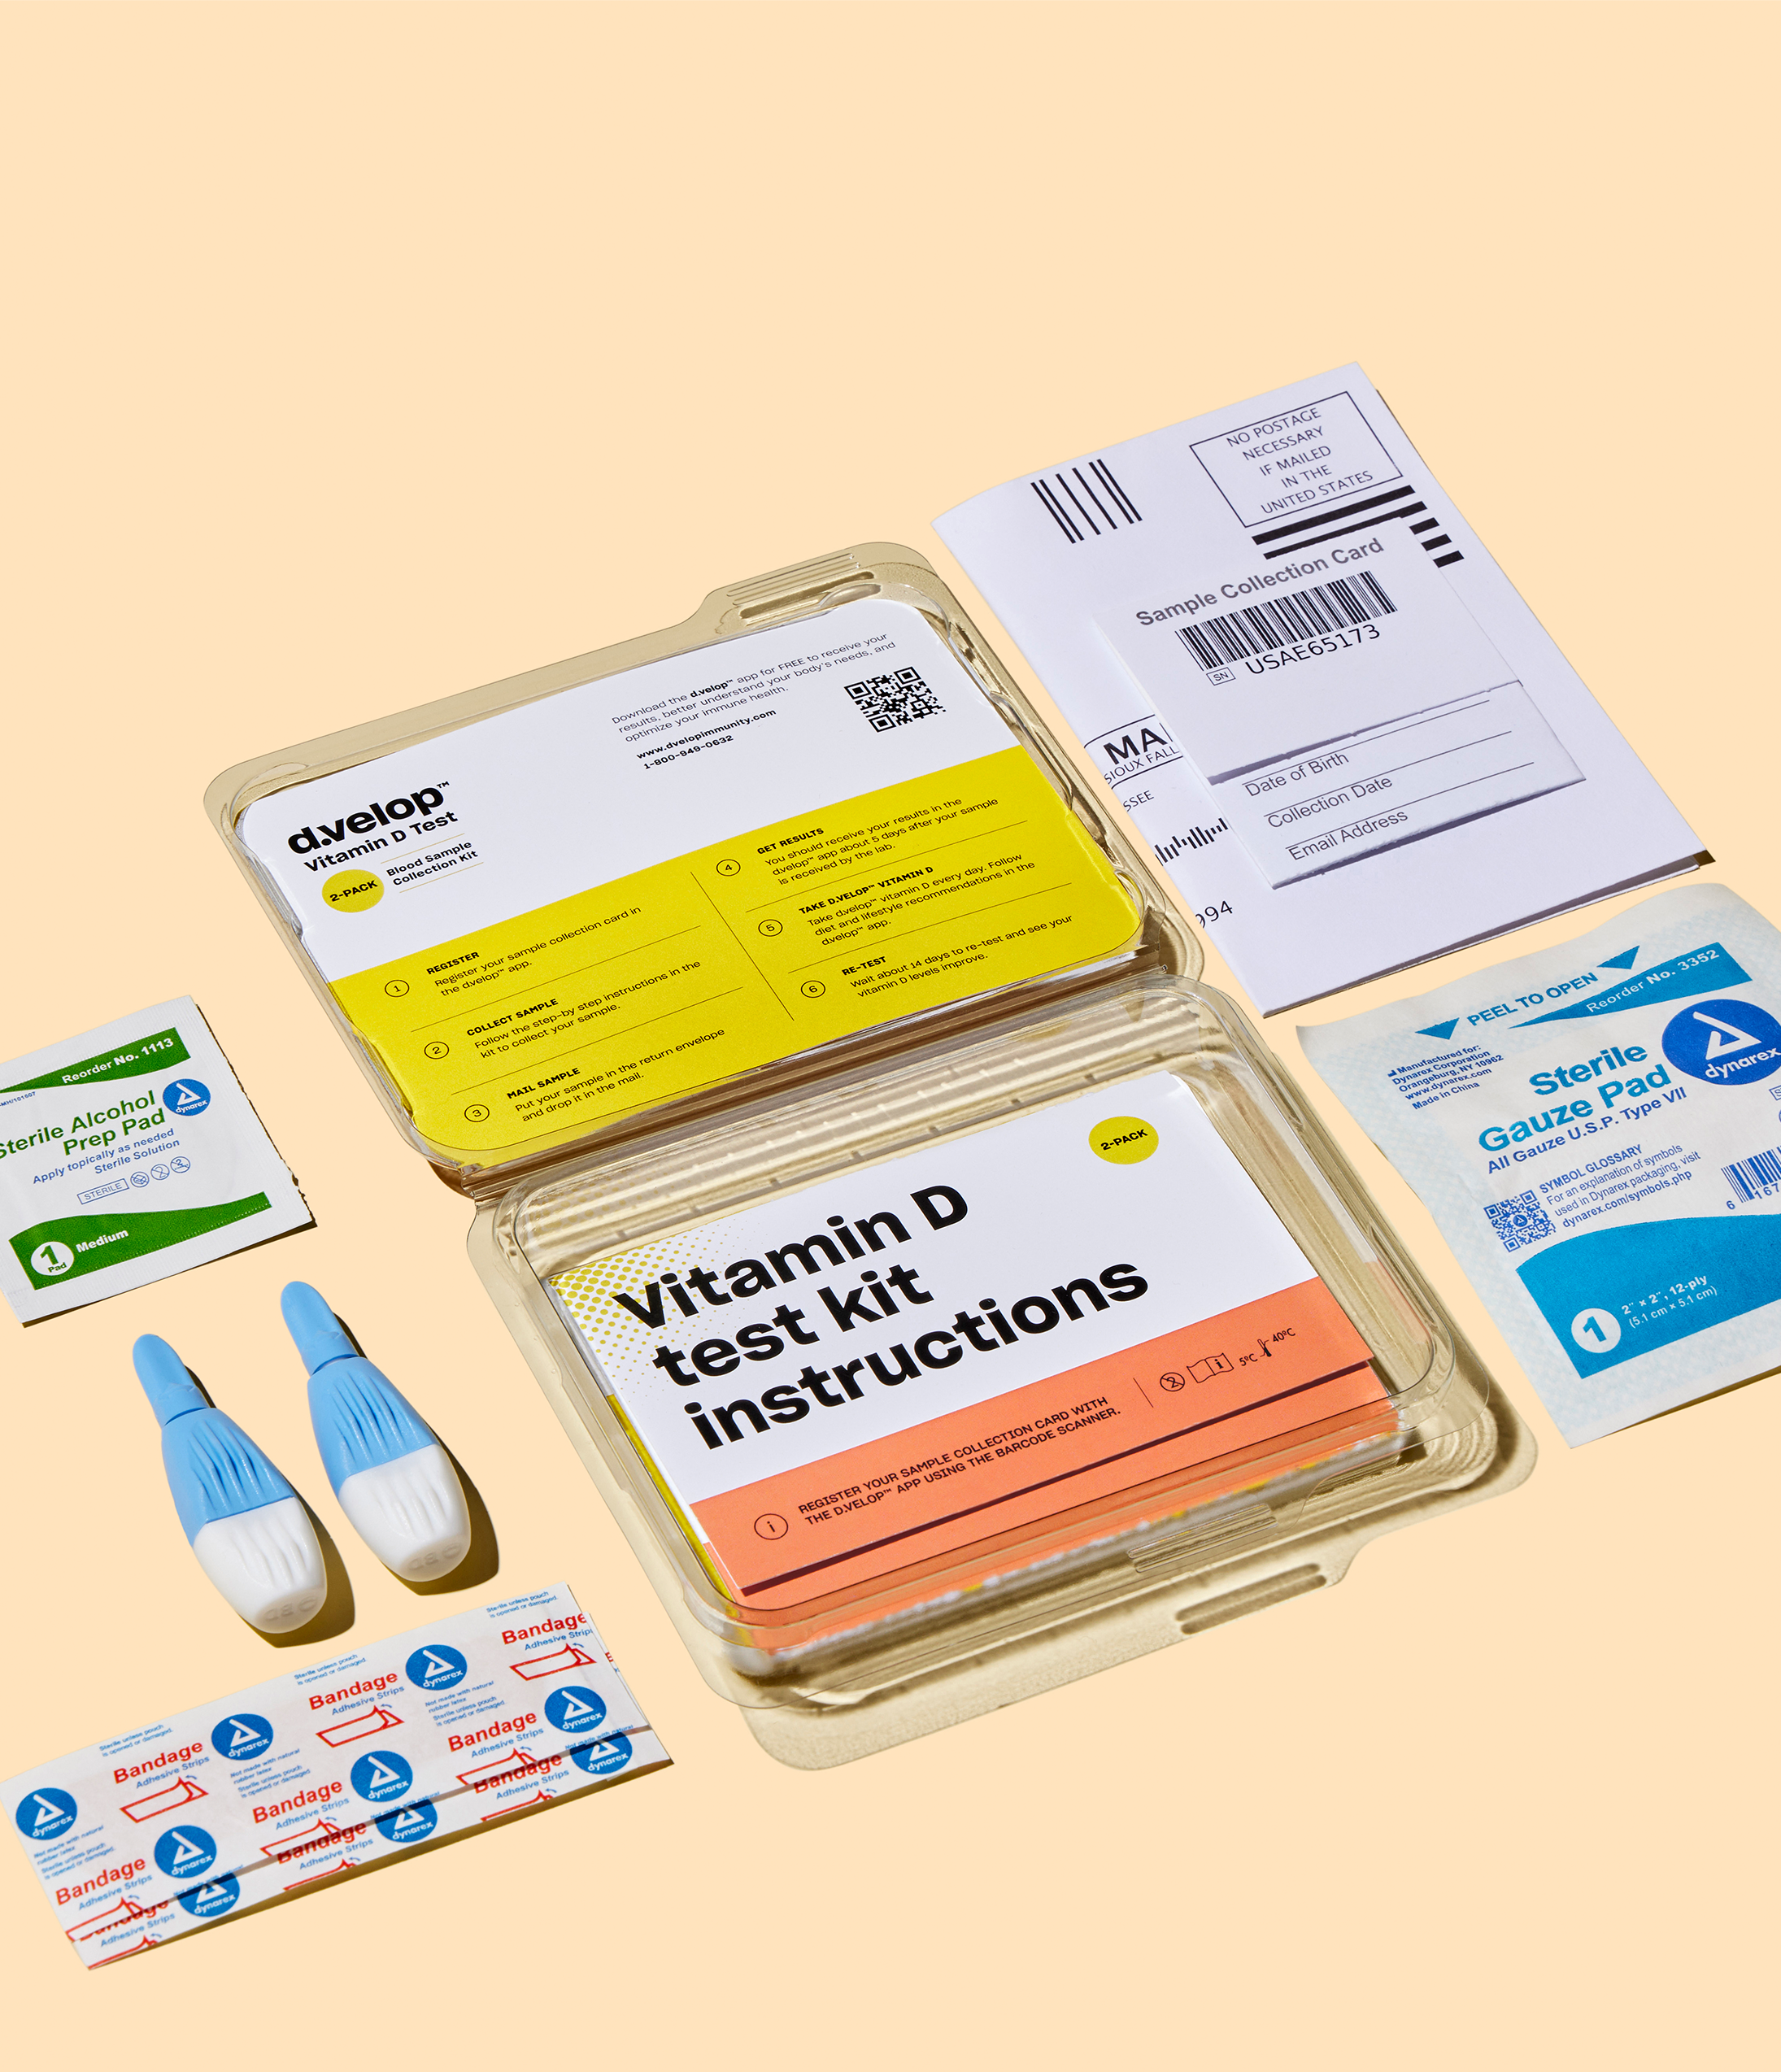 Vitamin D Test Kit - 2 Pack